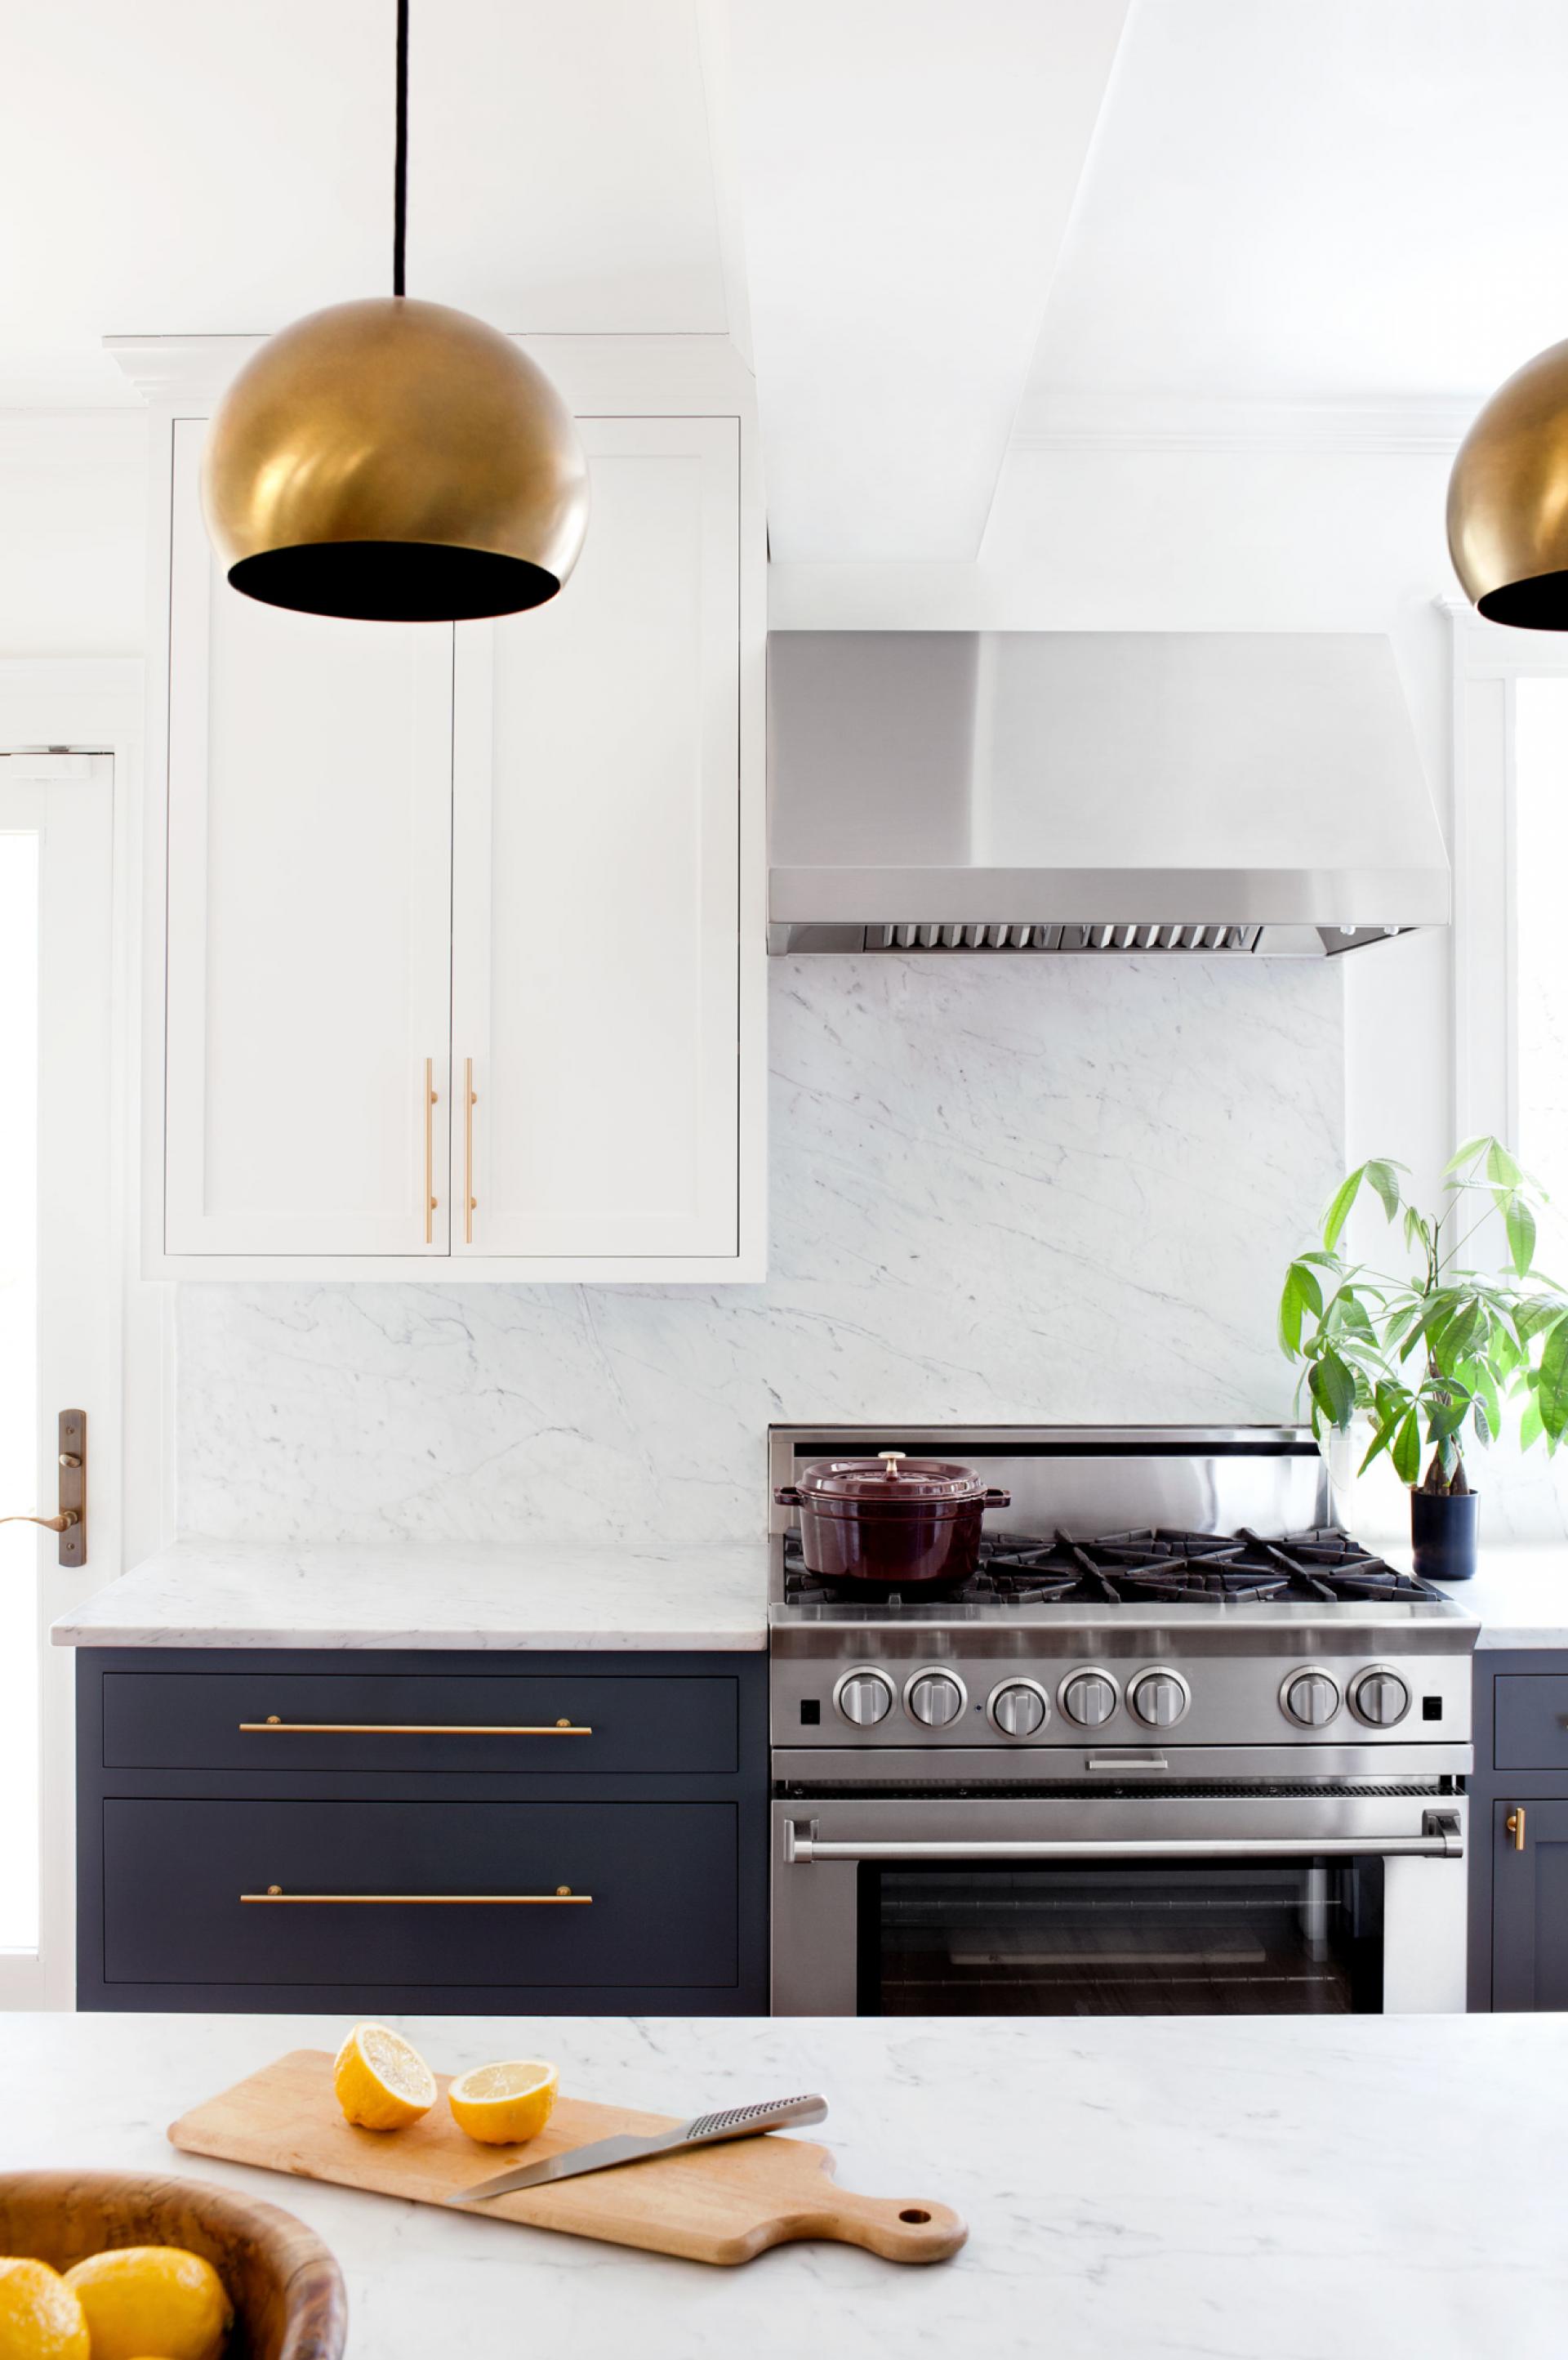 Kitchen Design by Elizabeth Lawson Design / via See and Savour